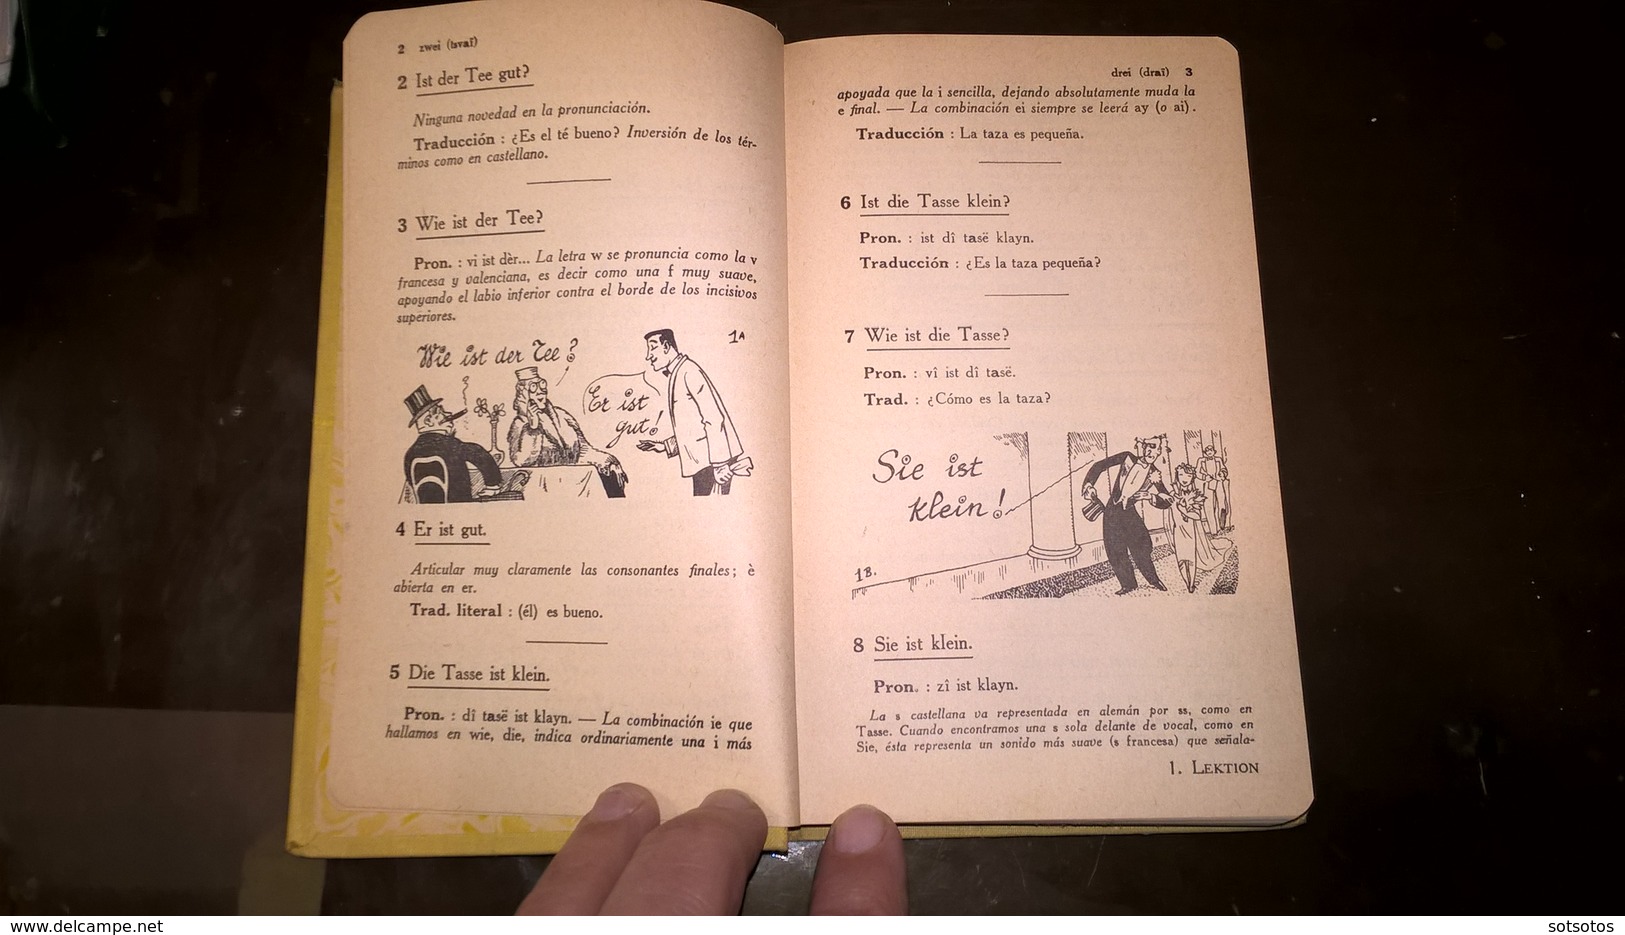 EL ALEMAN Sin ESFUERZO Por A. CHEREL - METODO DIARIO ASSIMIL - PARIS (1959) - 376 Pages (11,50x18 Cent) - IN VERY GOOD - Taalkundige Werken